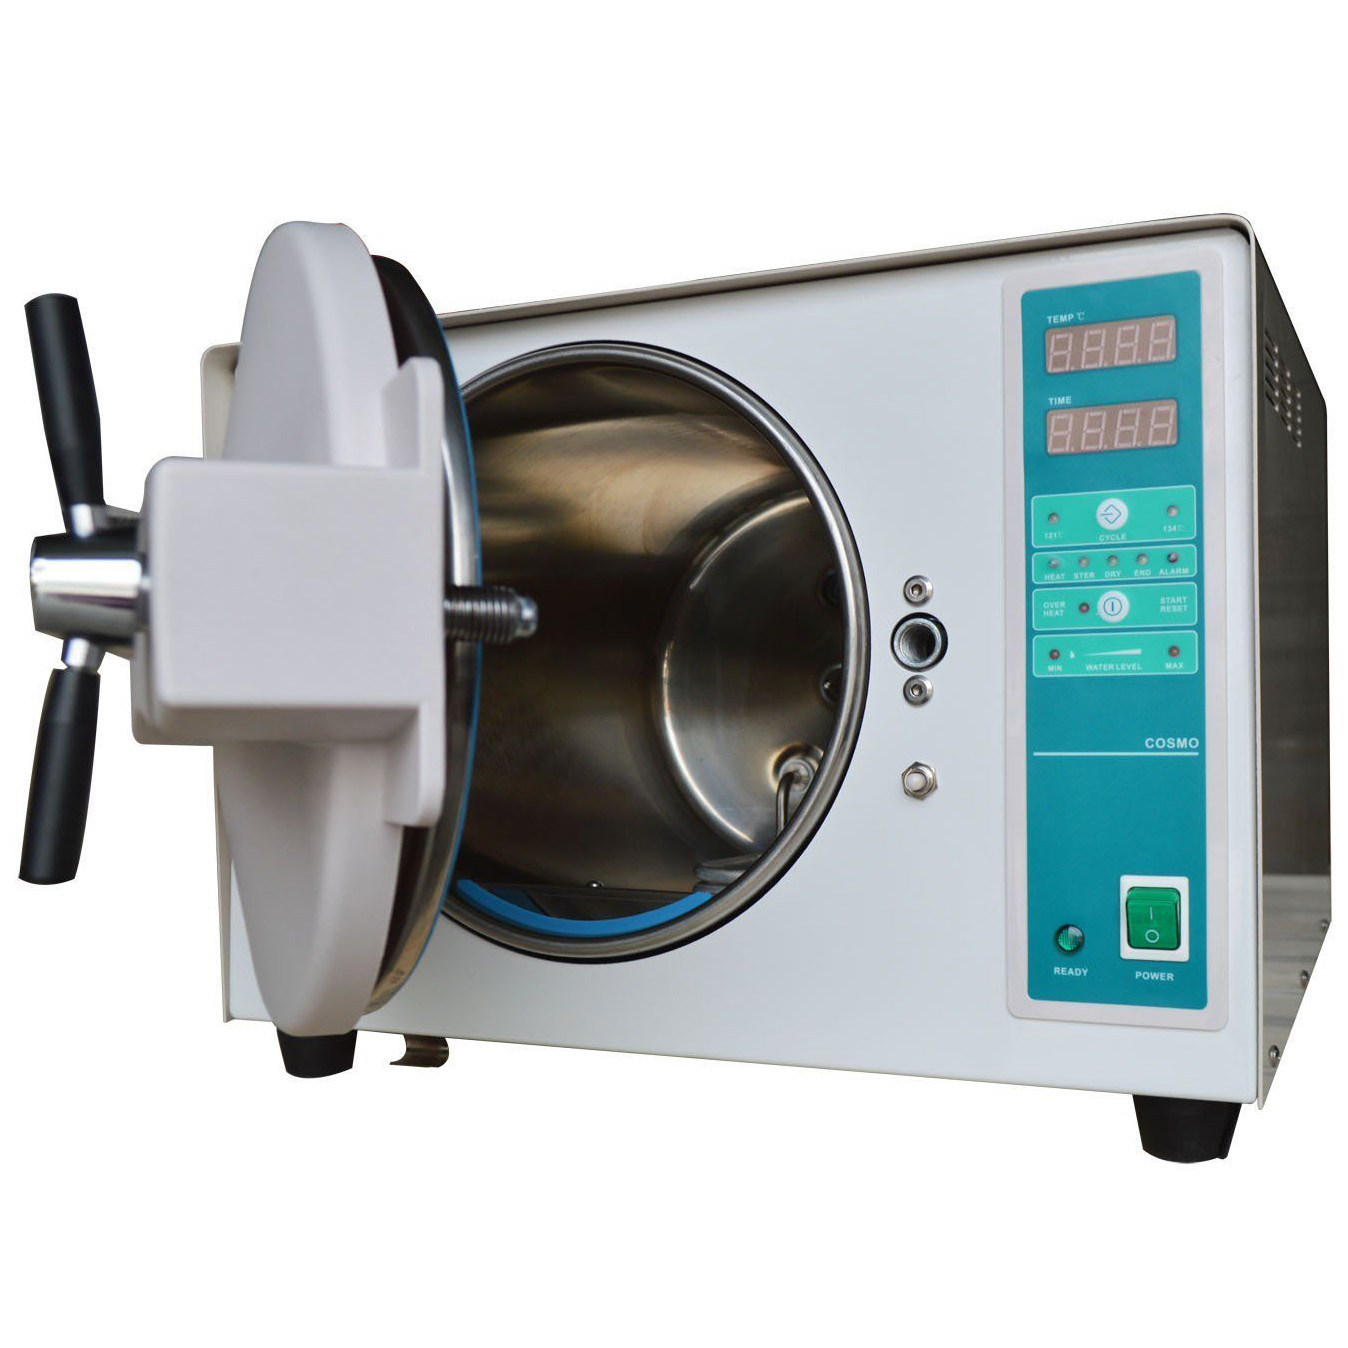 18L acciaio INOX automatica autoclave sterilizzazione 